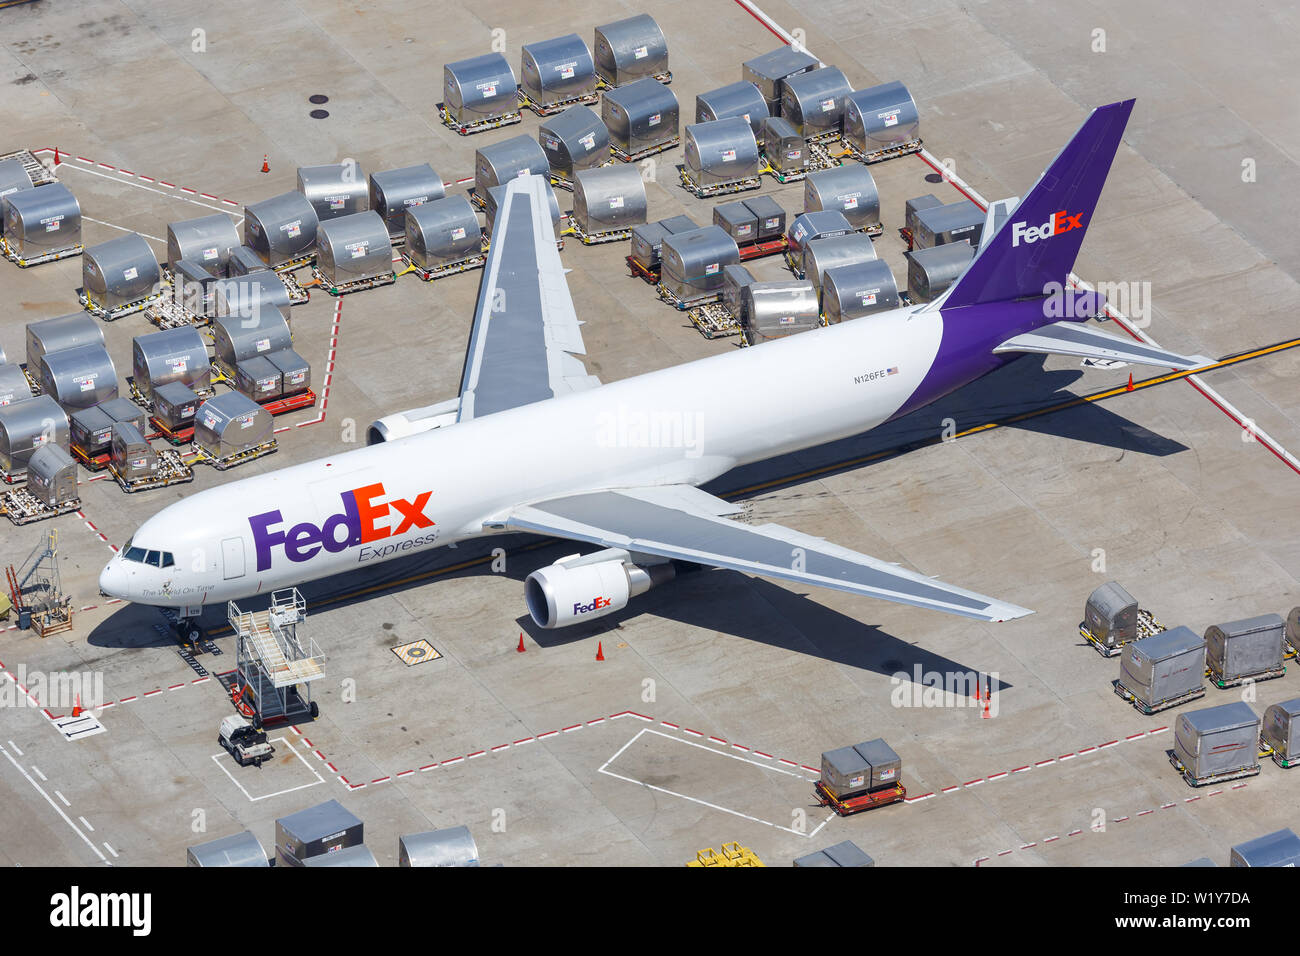 Los Angeles, California - 14 Aprile 2019: vista aerea FedEx Express Boeing 767-300F aereo all'aeroporto di Los Angeles (LAX) negli Stati Uniti. Foto Stock